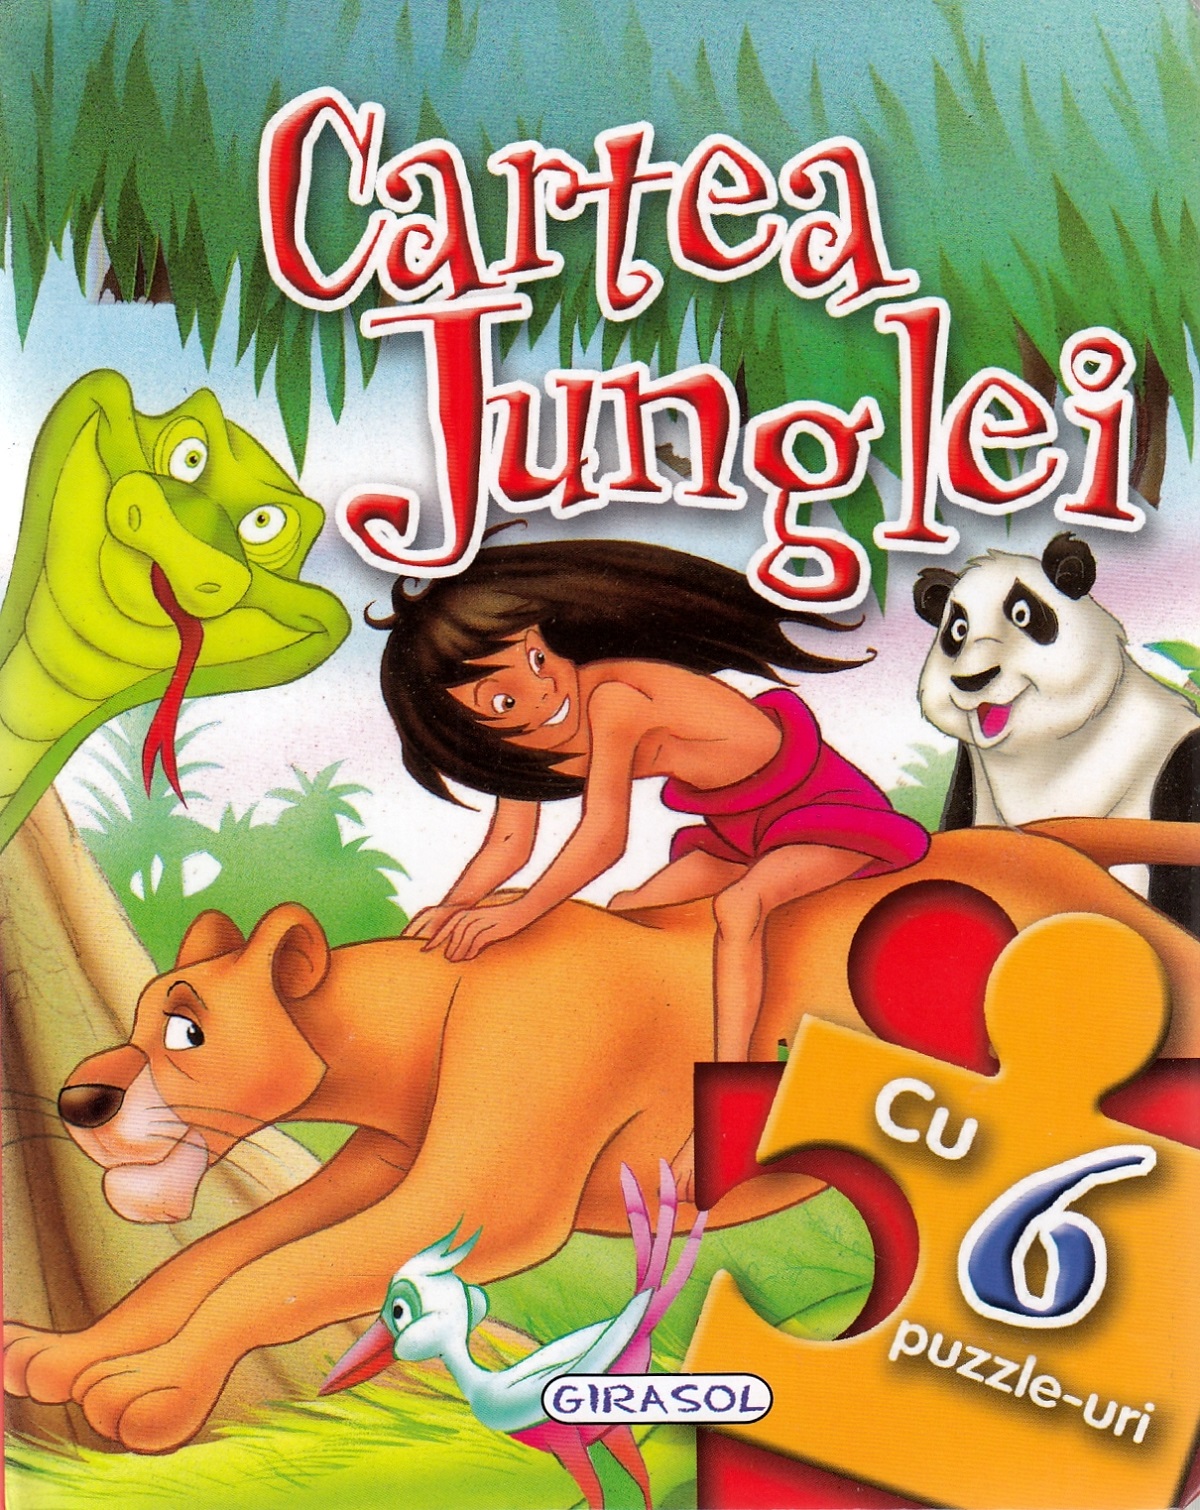 Cartea junglei. Povesti cu 6 puzzle-uri